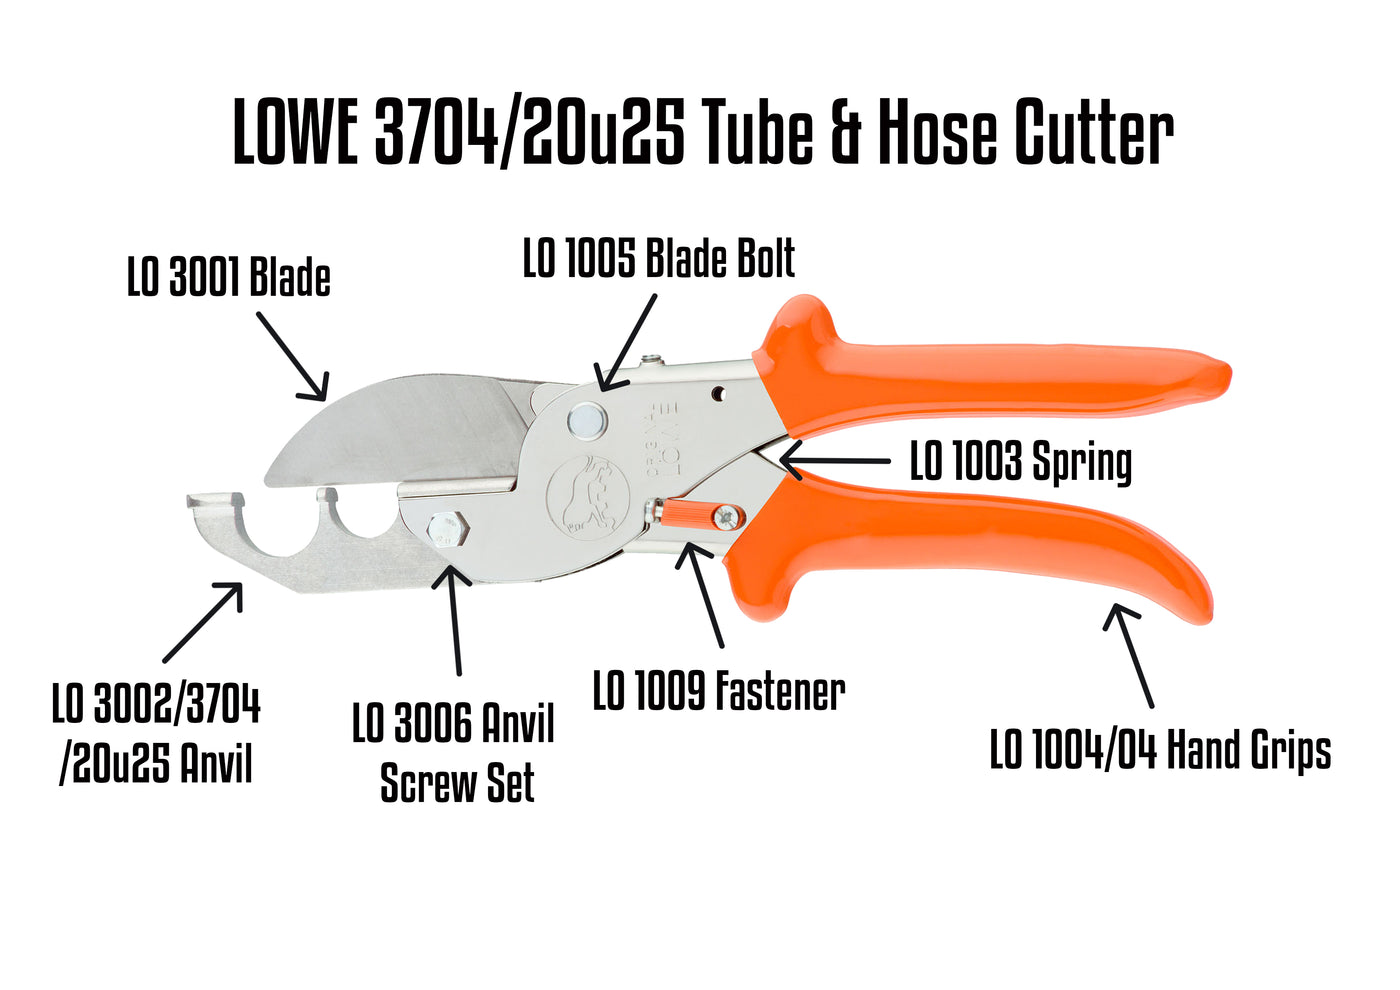 LO 3704/20u25 Tube Cutter